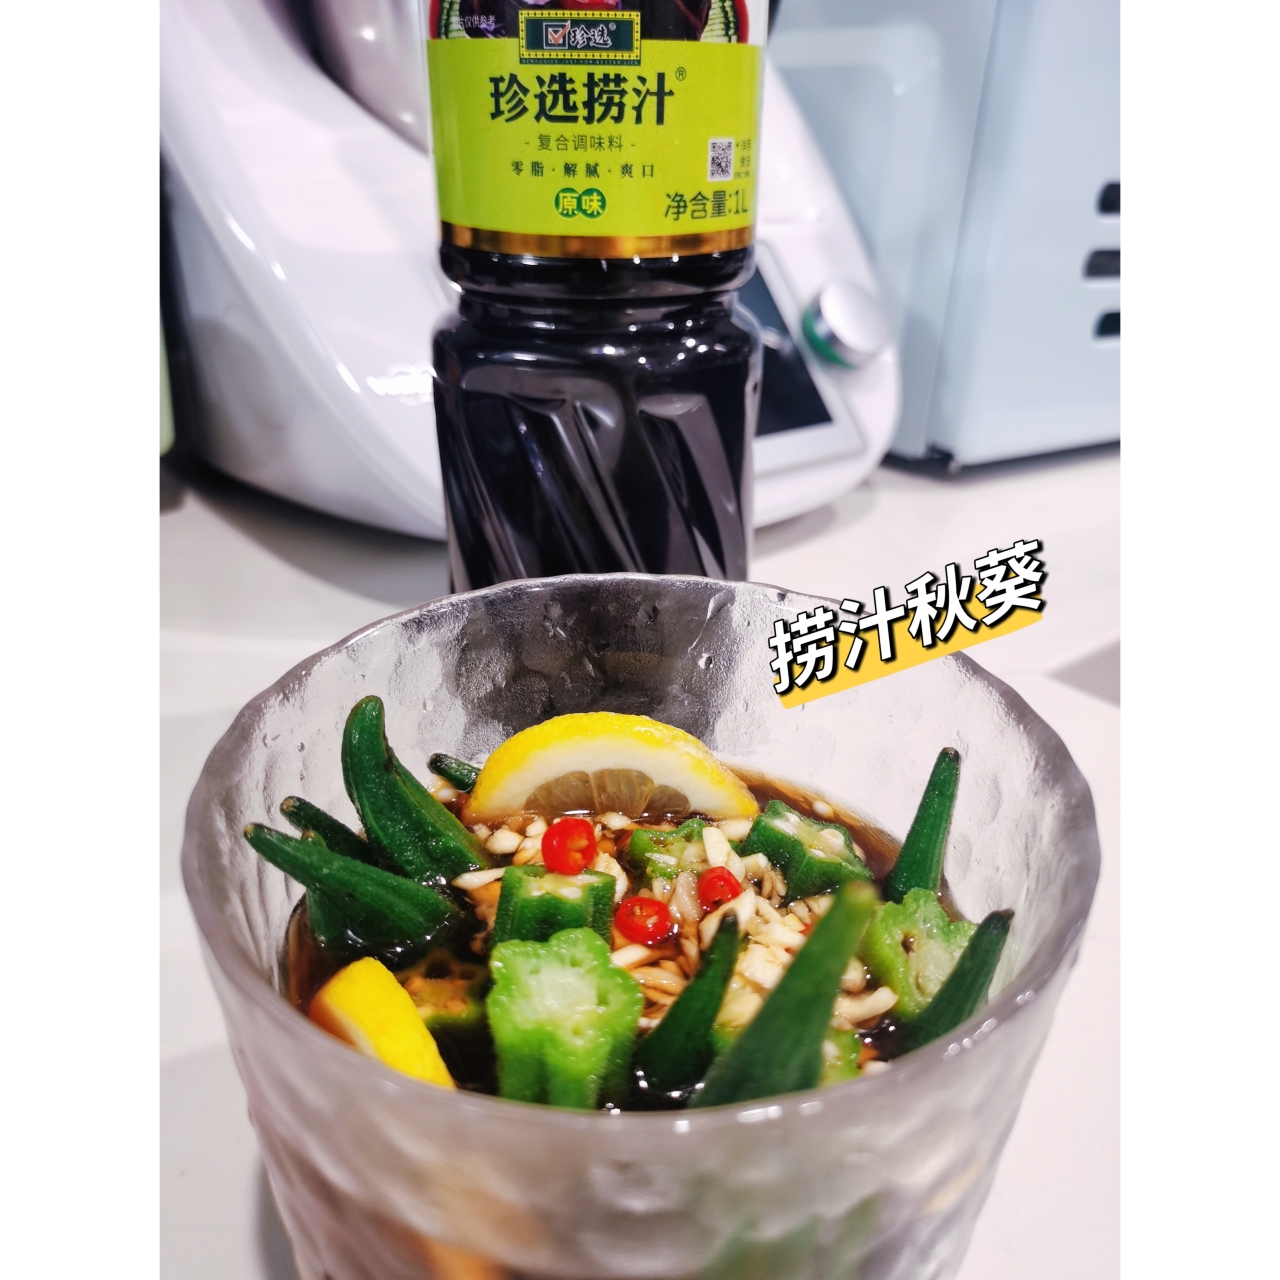 0厨艺捞汁秋葵(超级简单)的做法